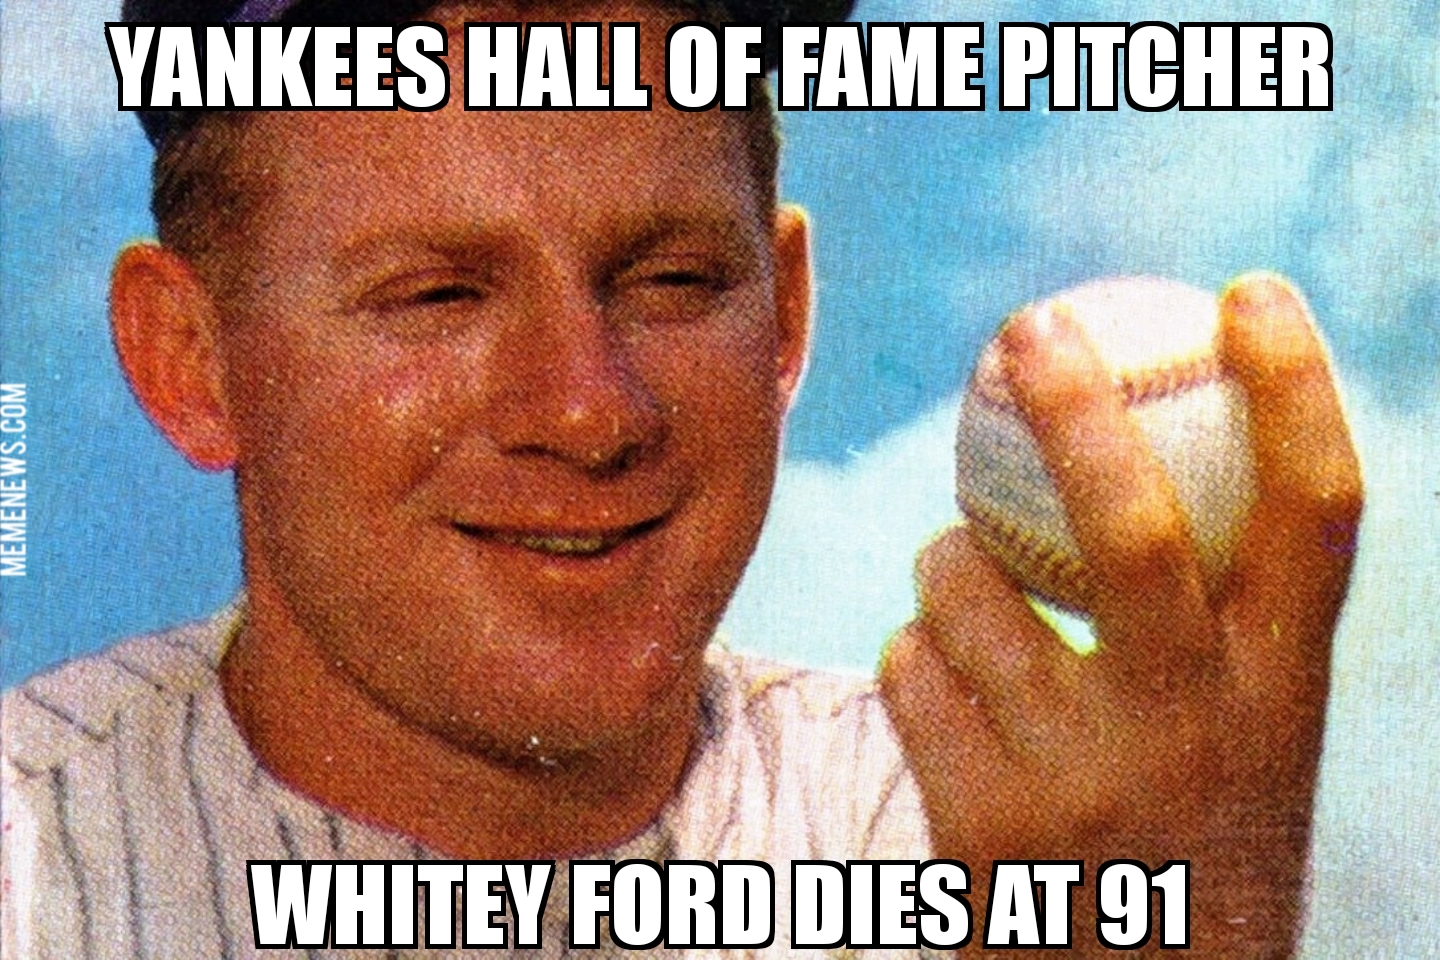 Whitey Ford dies